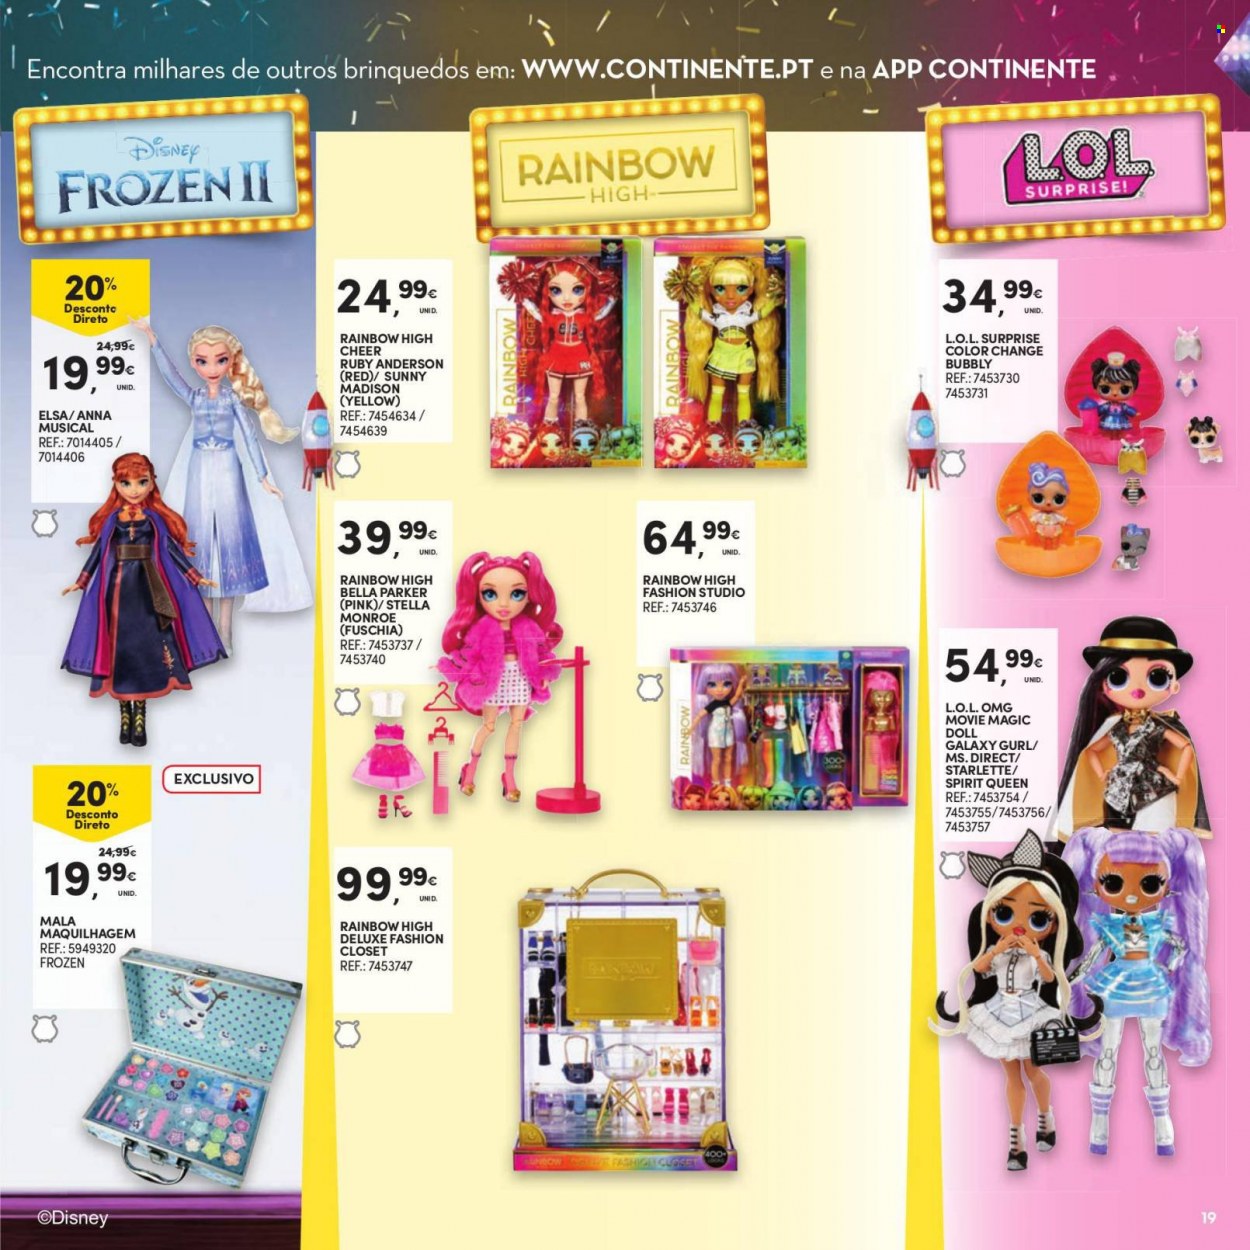 thumbnail - Folheto Continente Modelo - 9.11.2021 - 12.12.2021 - Produtos em promoção - Frozen, brinquedo, L.O.L. Surprise. Página 19.